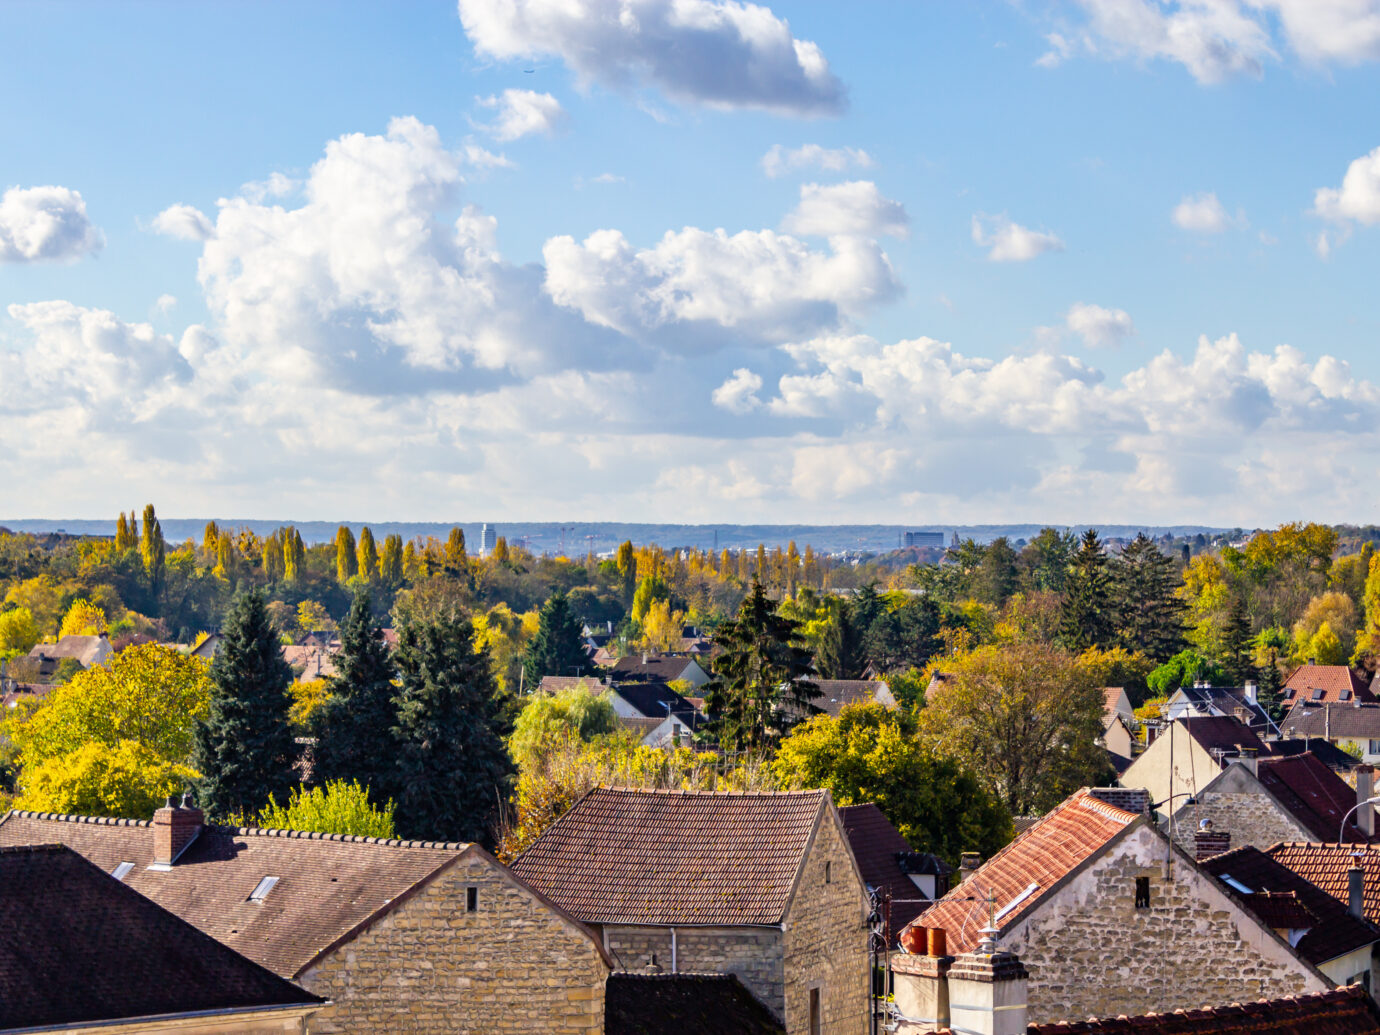 City view of Auvers-sur-Oise village, France